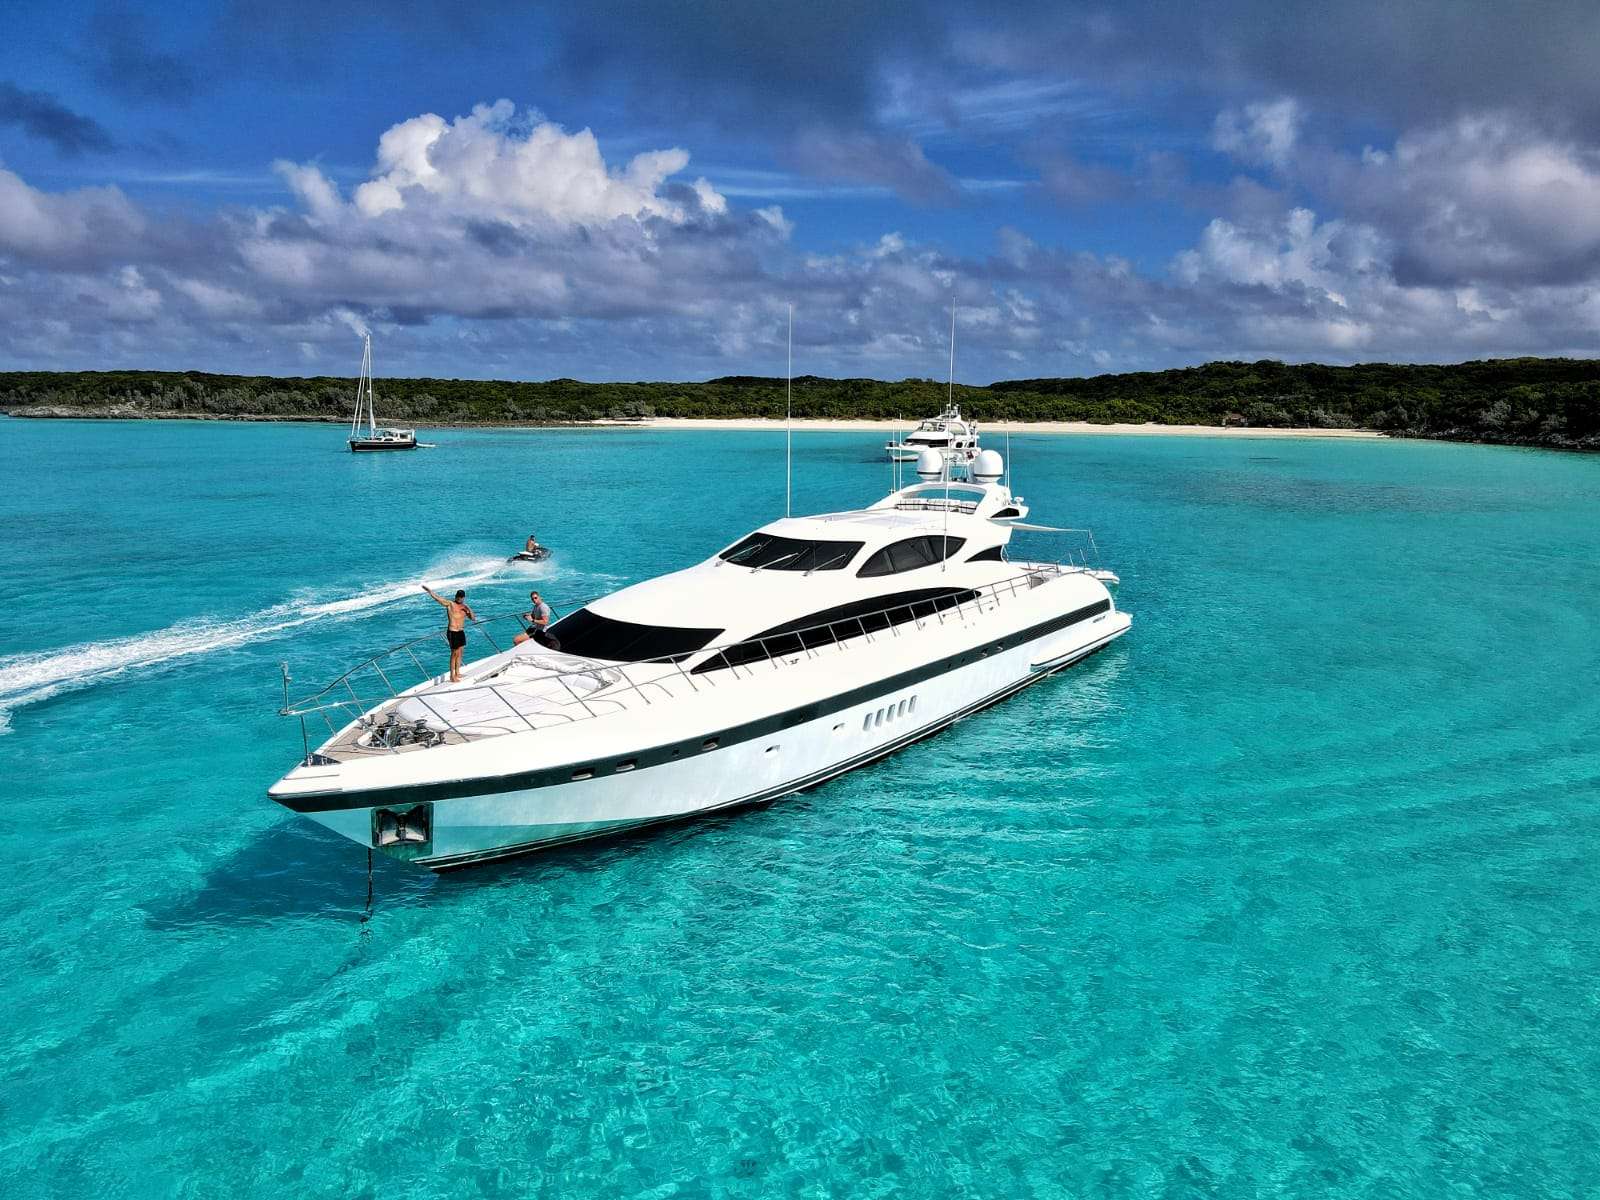 DAYA - Motor Boat Charter USA & Boat hire in Florida & Bahamas 1